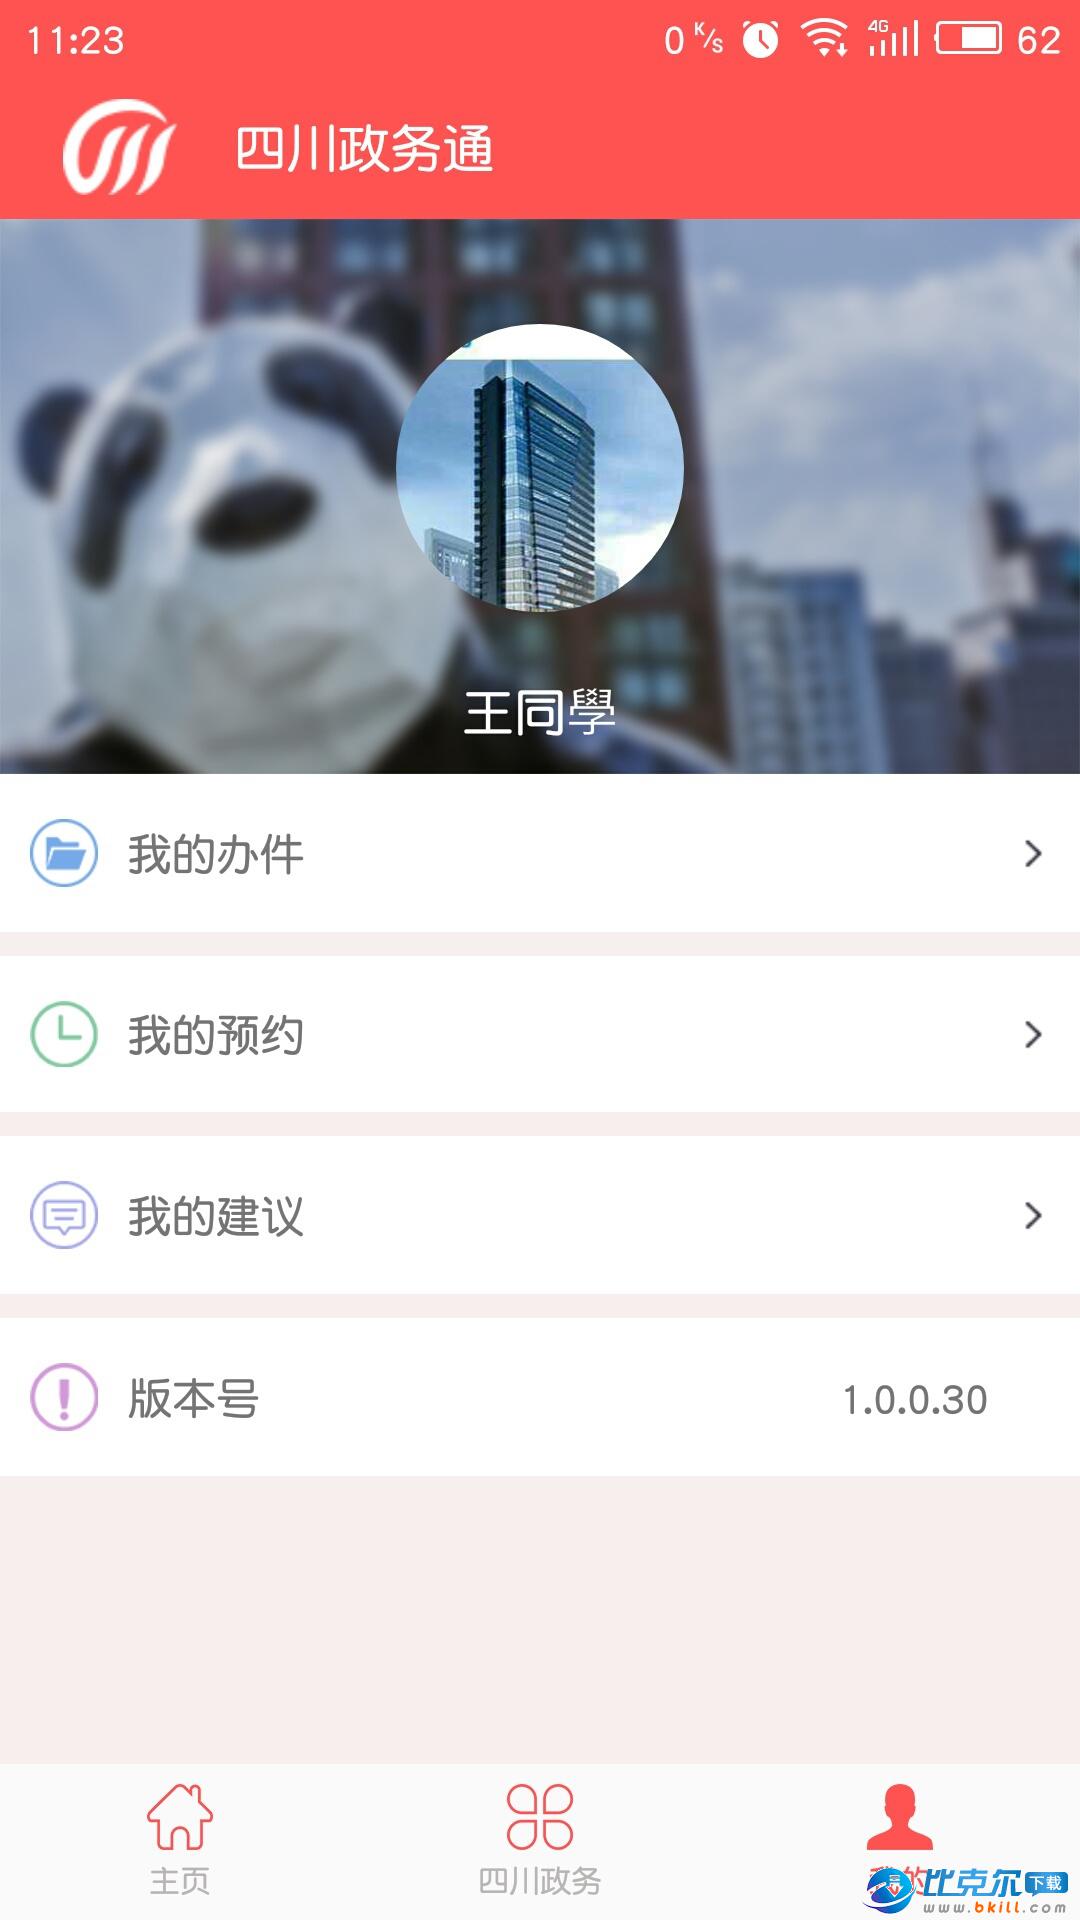 四川政务通|政务通app下载 v1.0.0.30 安卓版 - 